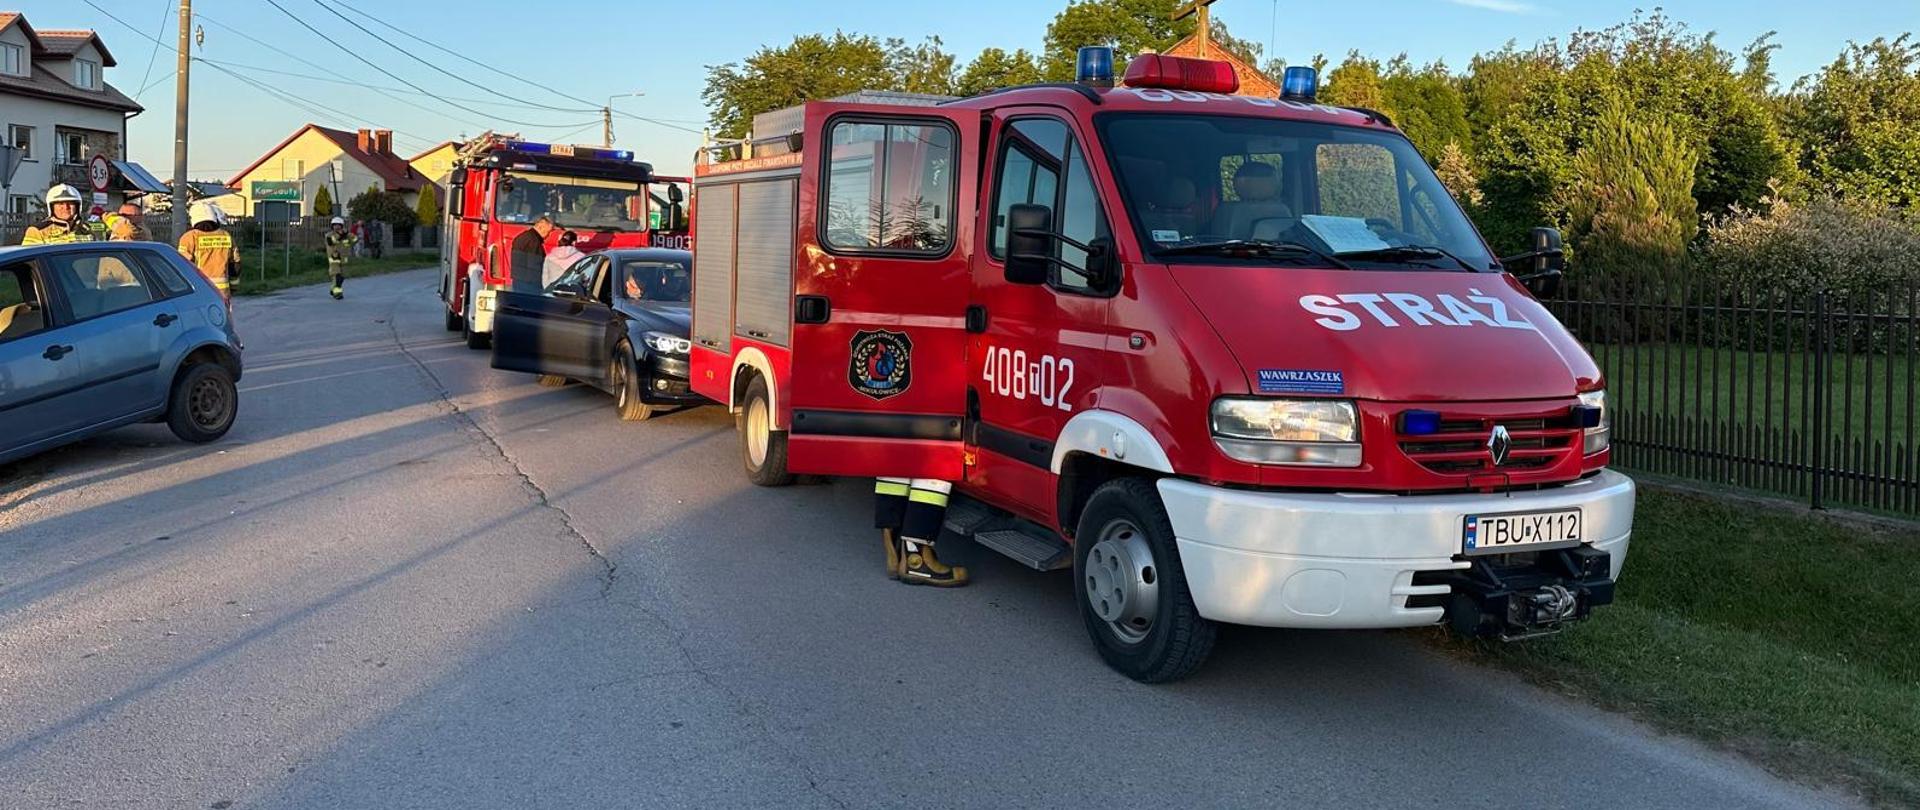 Samochody pożarnicze po prawej stronie, po lewej stronie niebieski samochód biorący udział w wypadku oraz strażacy. W tle domy